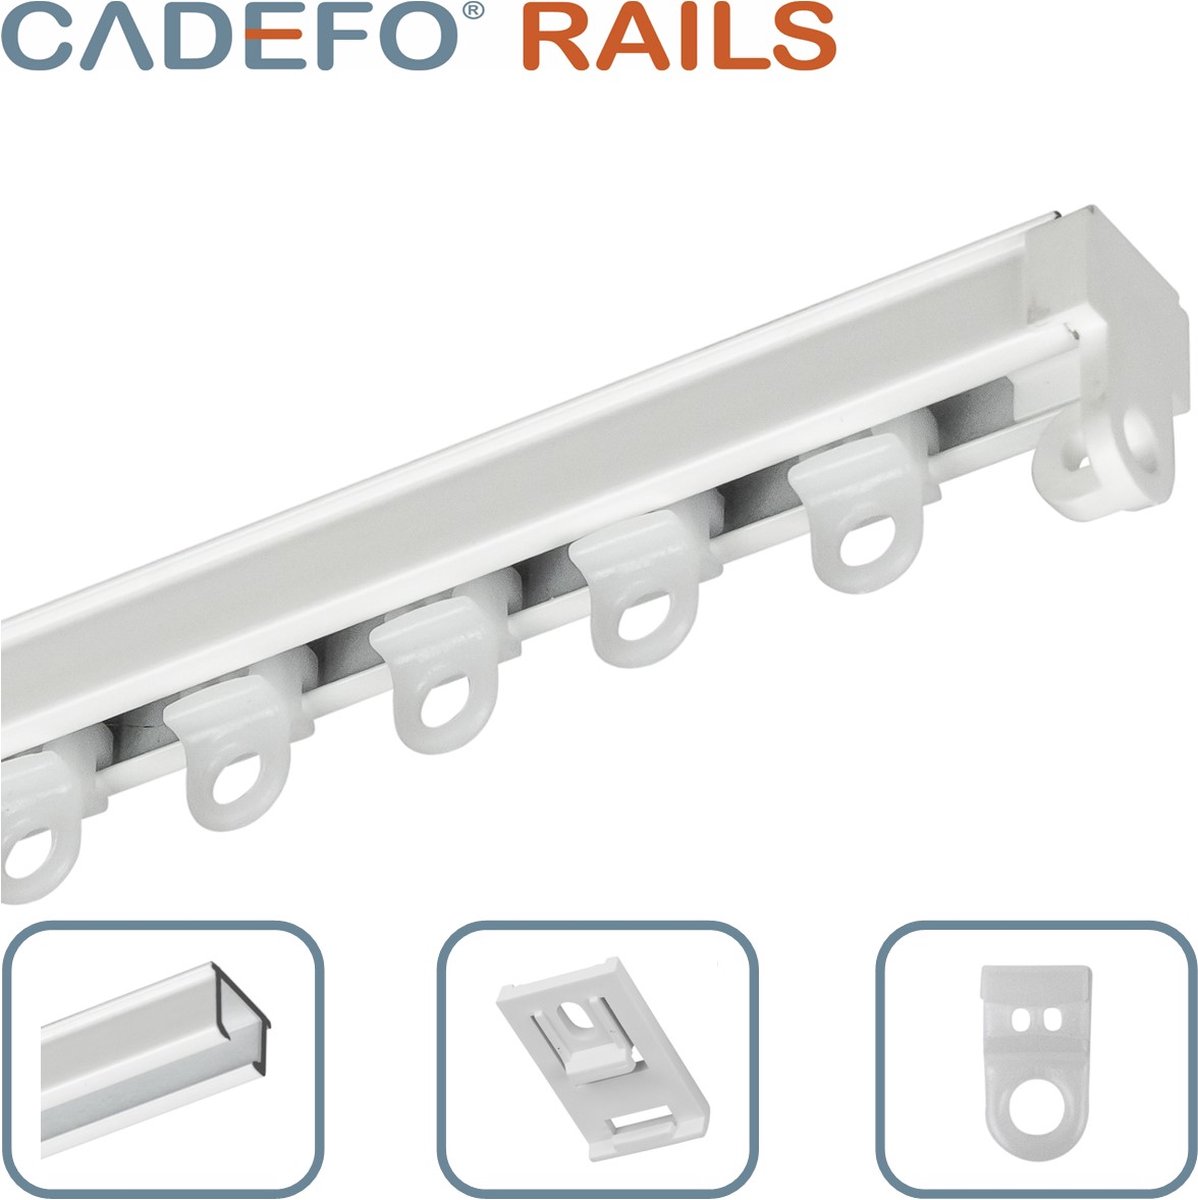 CADEFO RAILS (501 - 550 cm) Gordijnrails - Compleet op maat! - UIT 1 STUK - Leverbaar tot 6 meter - Plafondbevestiging - Lengte 509 cm